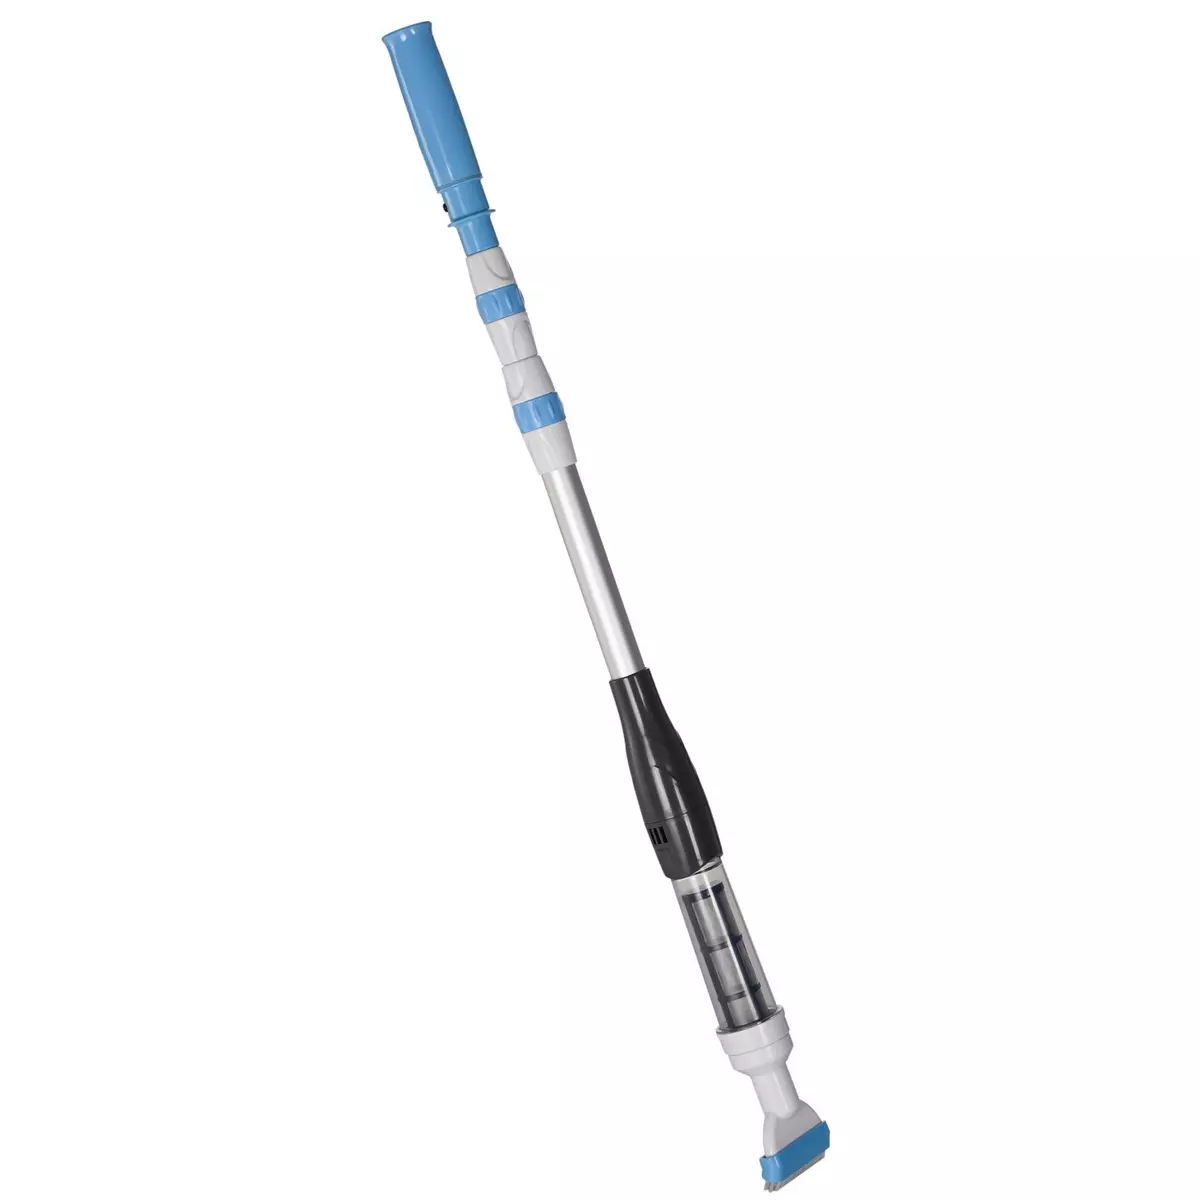 OUTSUNNY Aspirateur balai électrique sans fil piscine spa - manche télescopique 106-162 cm - brosse, sac filtrant - ABS alu. - blanc bleu